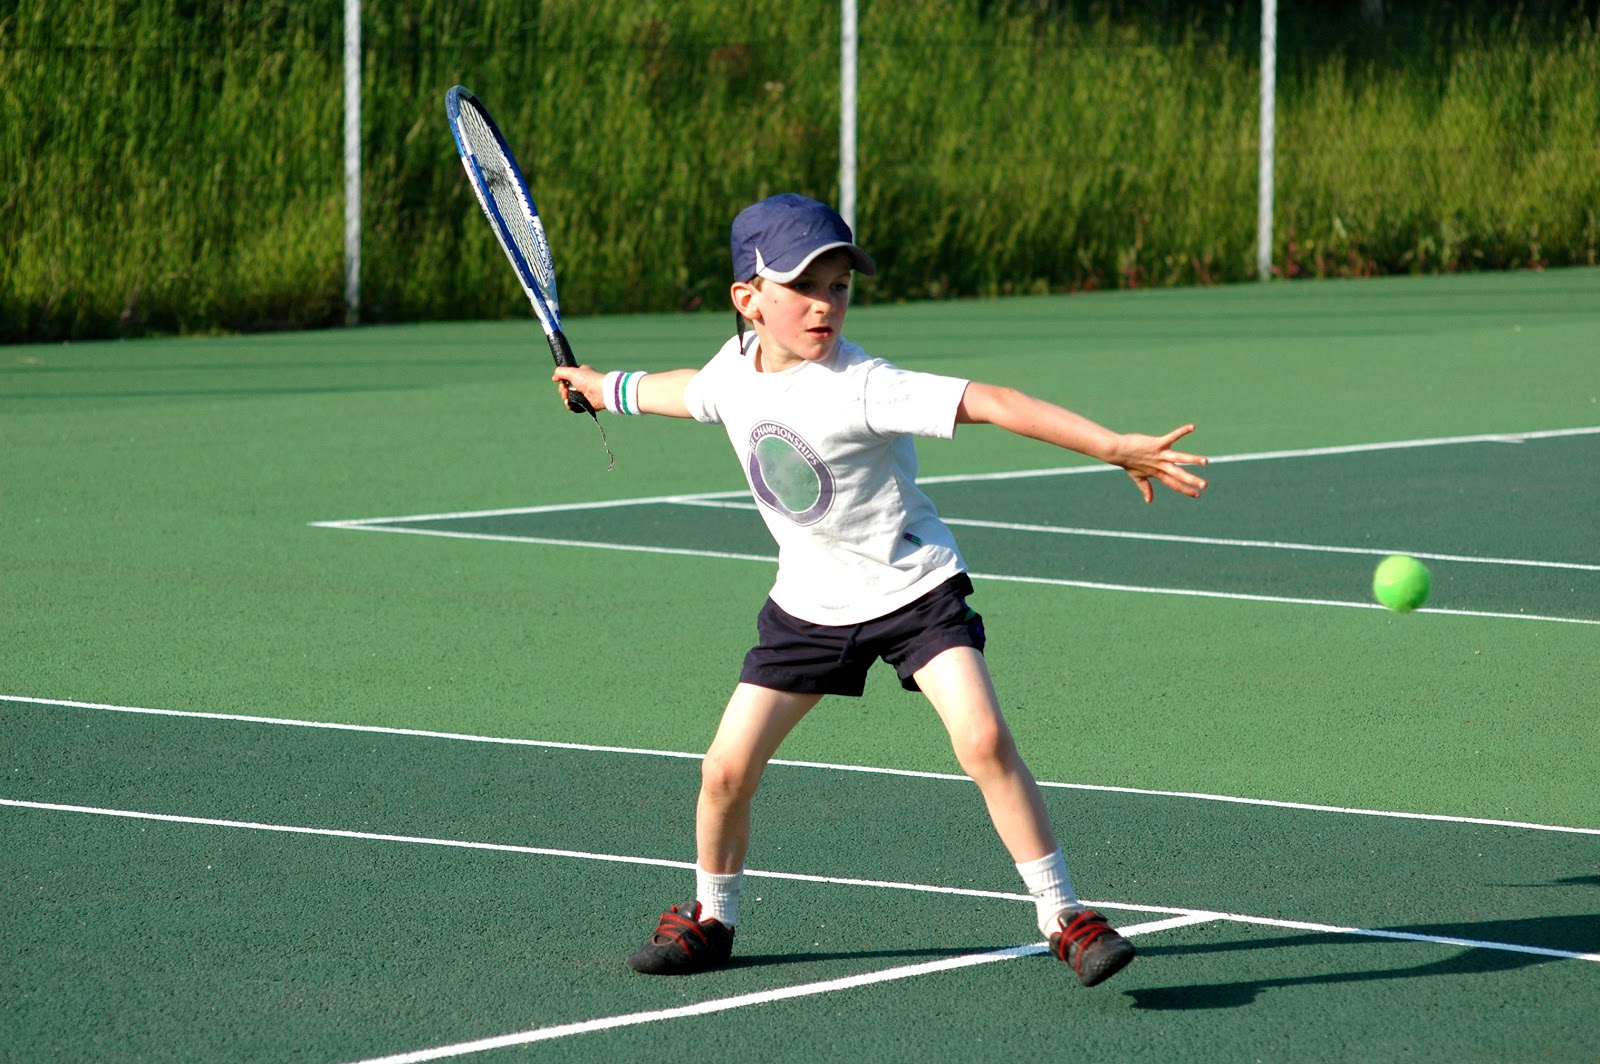 Duplas no tênis: entenda o jogo e melhore o seu desempenho